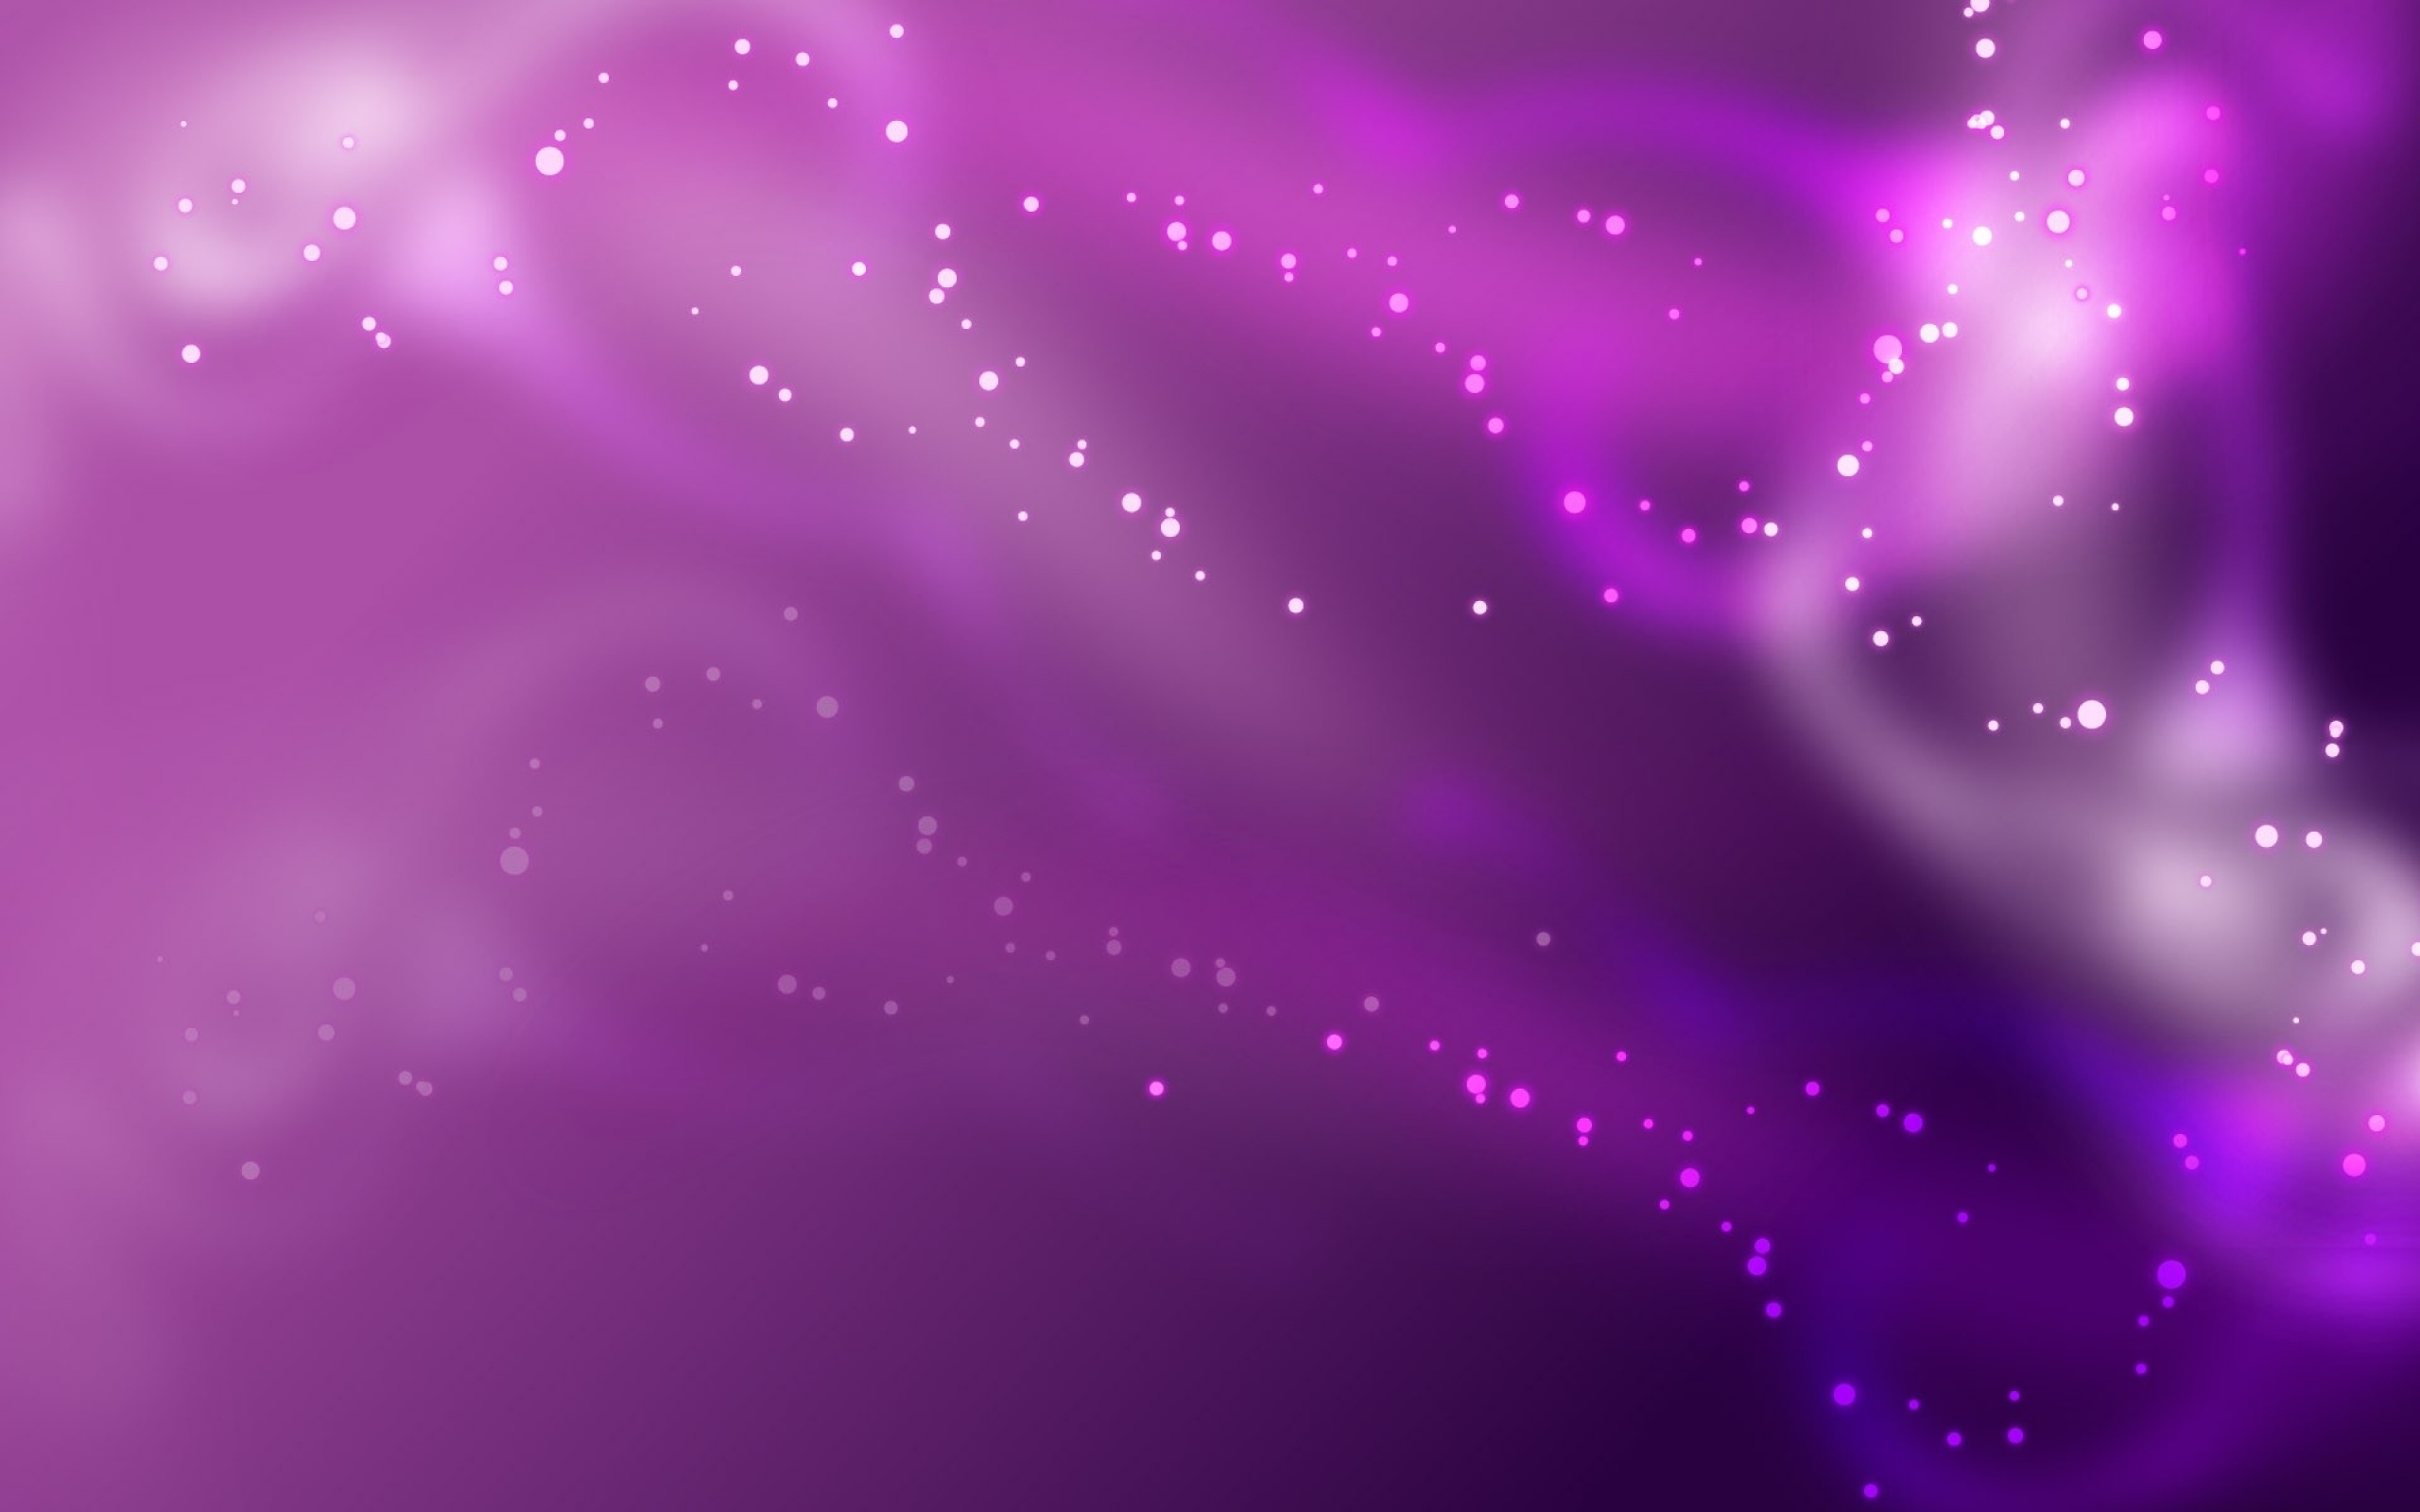 абстракция, блики, цвет, фиолетовый фон, Abstraction, glare, color, purple background